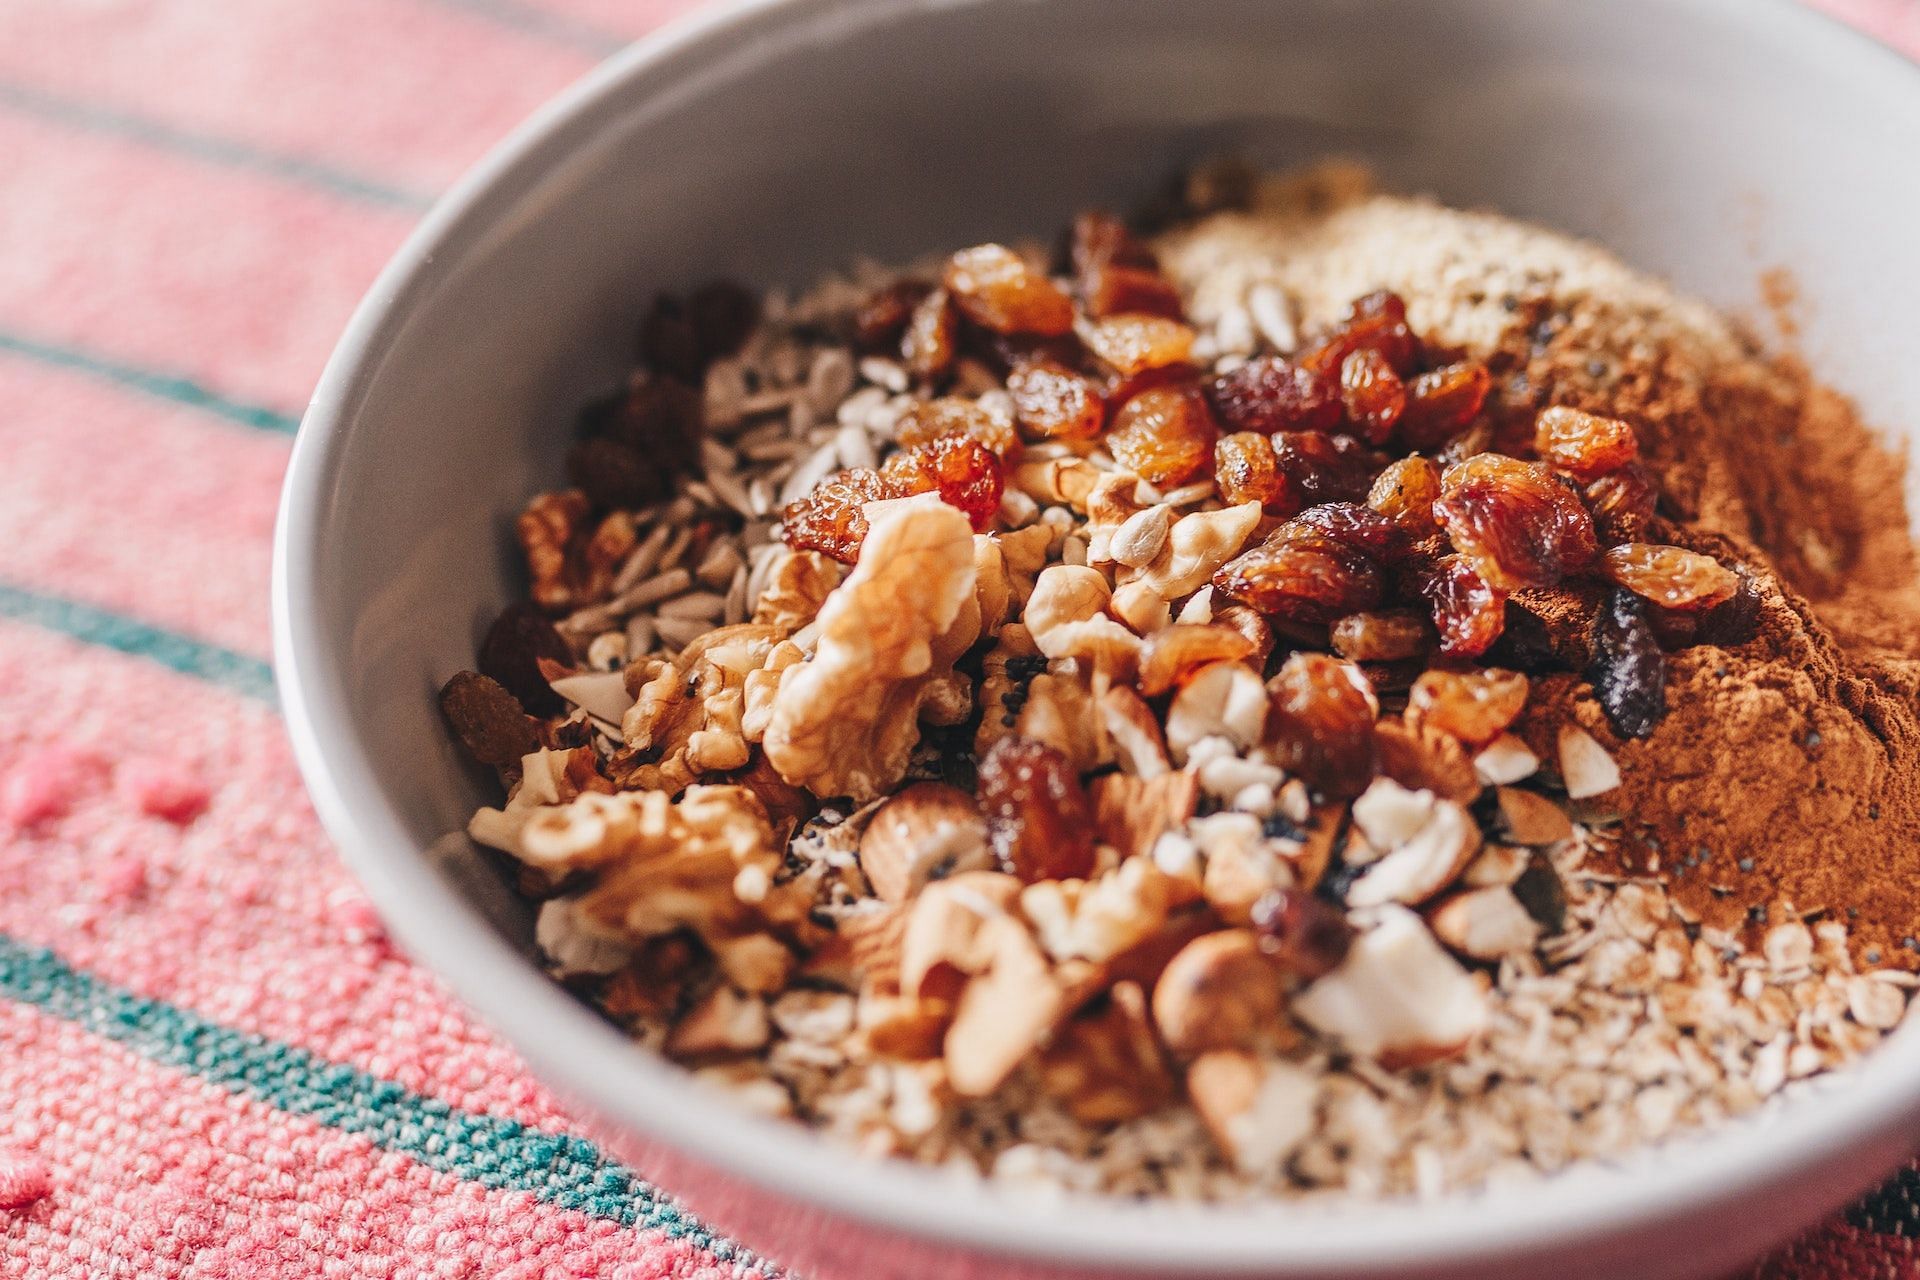 Oatmeal is a healthy pre-workout breakfast option. (Photo via Pexels/Jo&atilde;o Jesus)